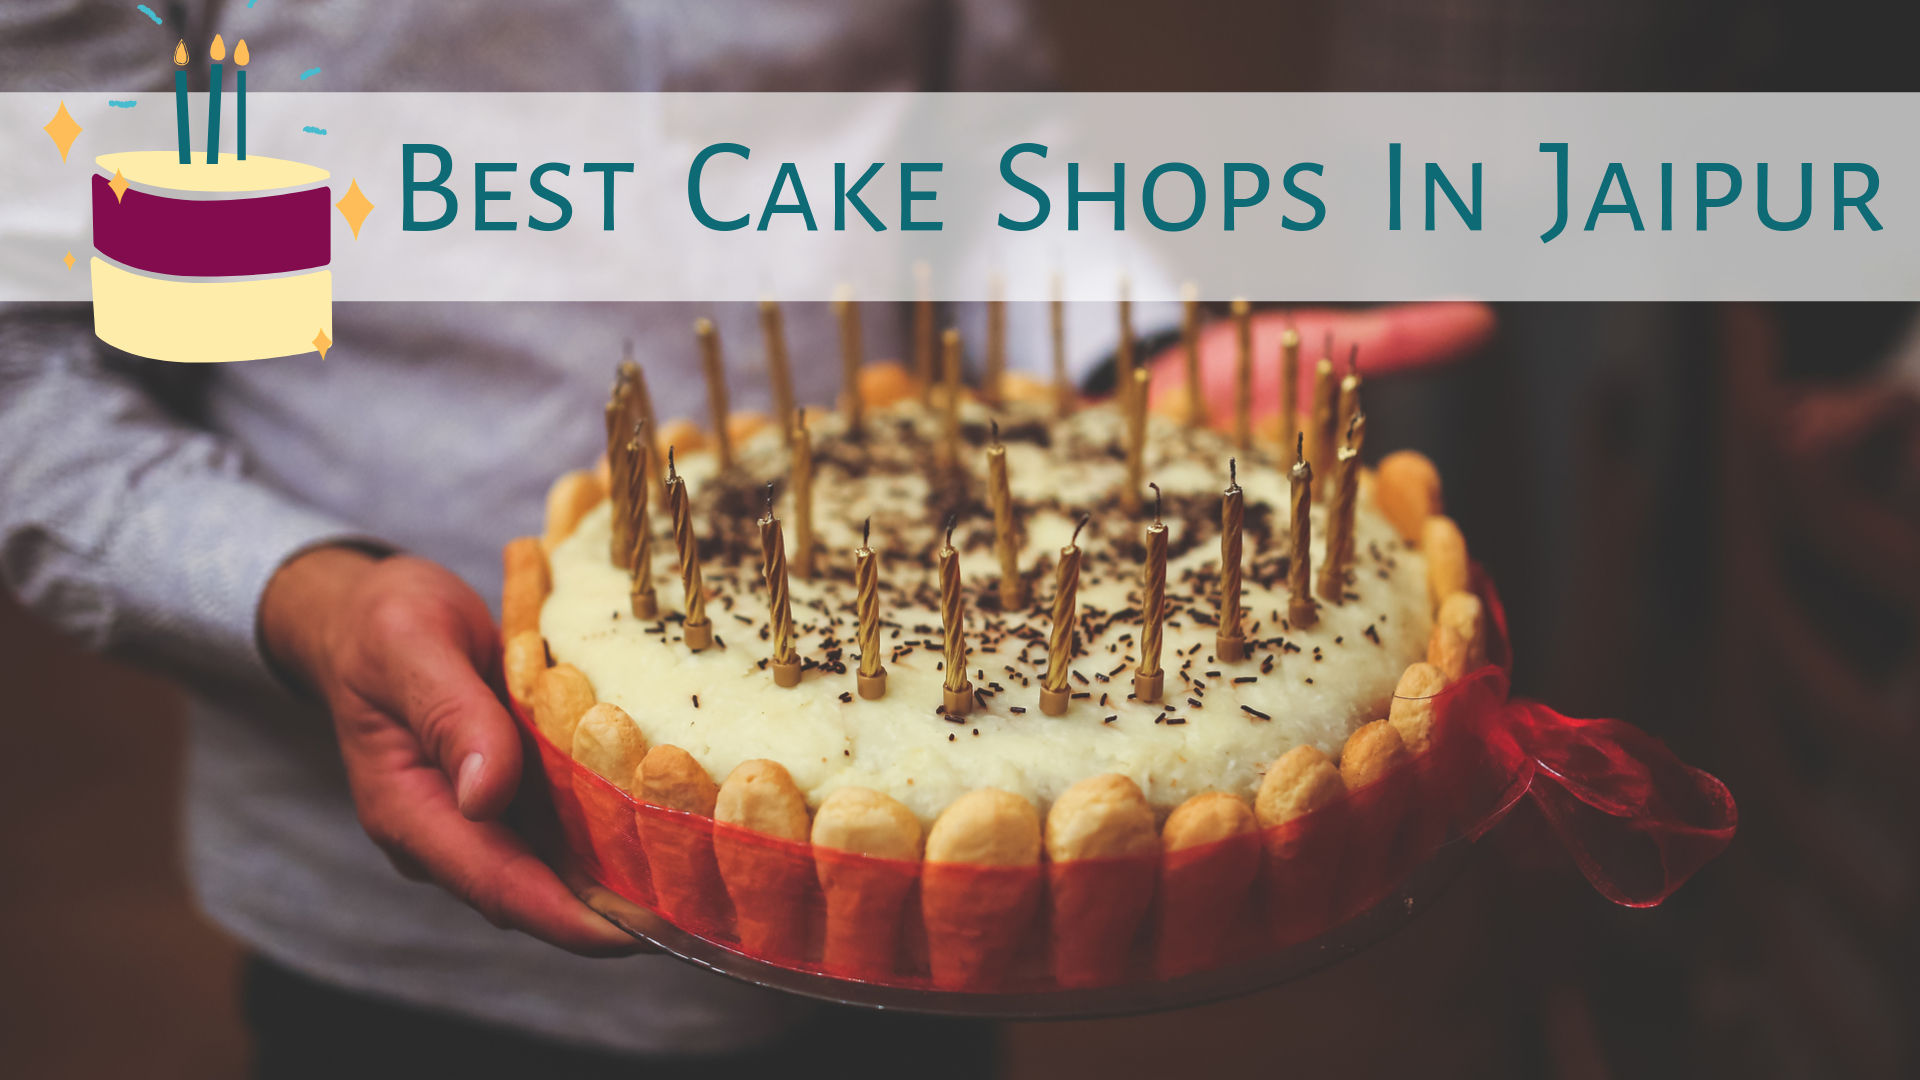 Vanilla Cake| Bake Hut Jaipur| Orderyourchoice